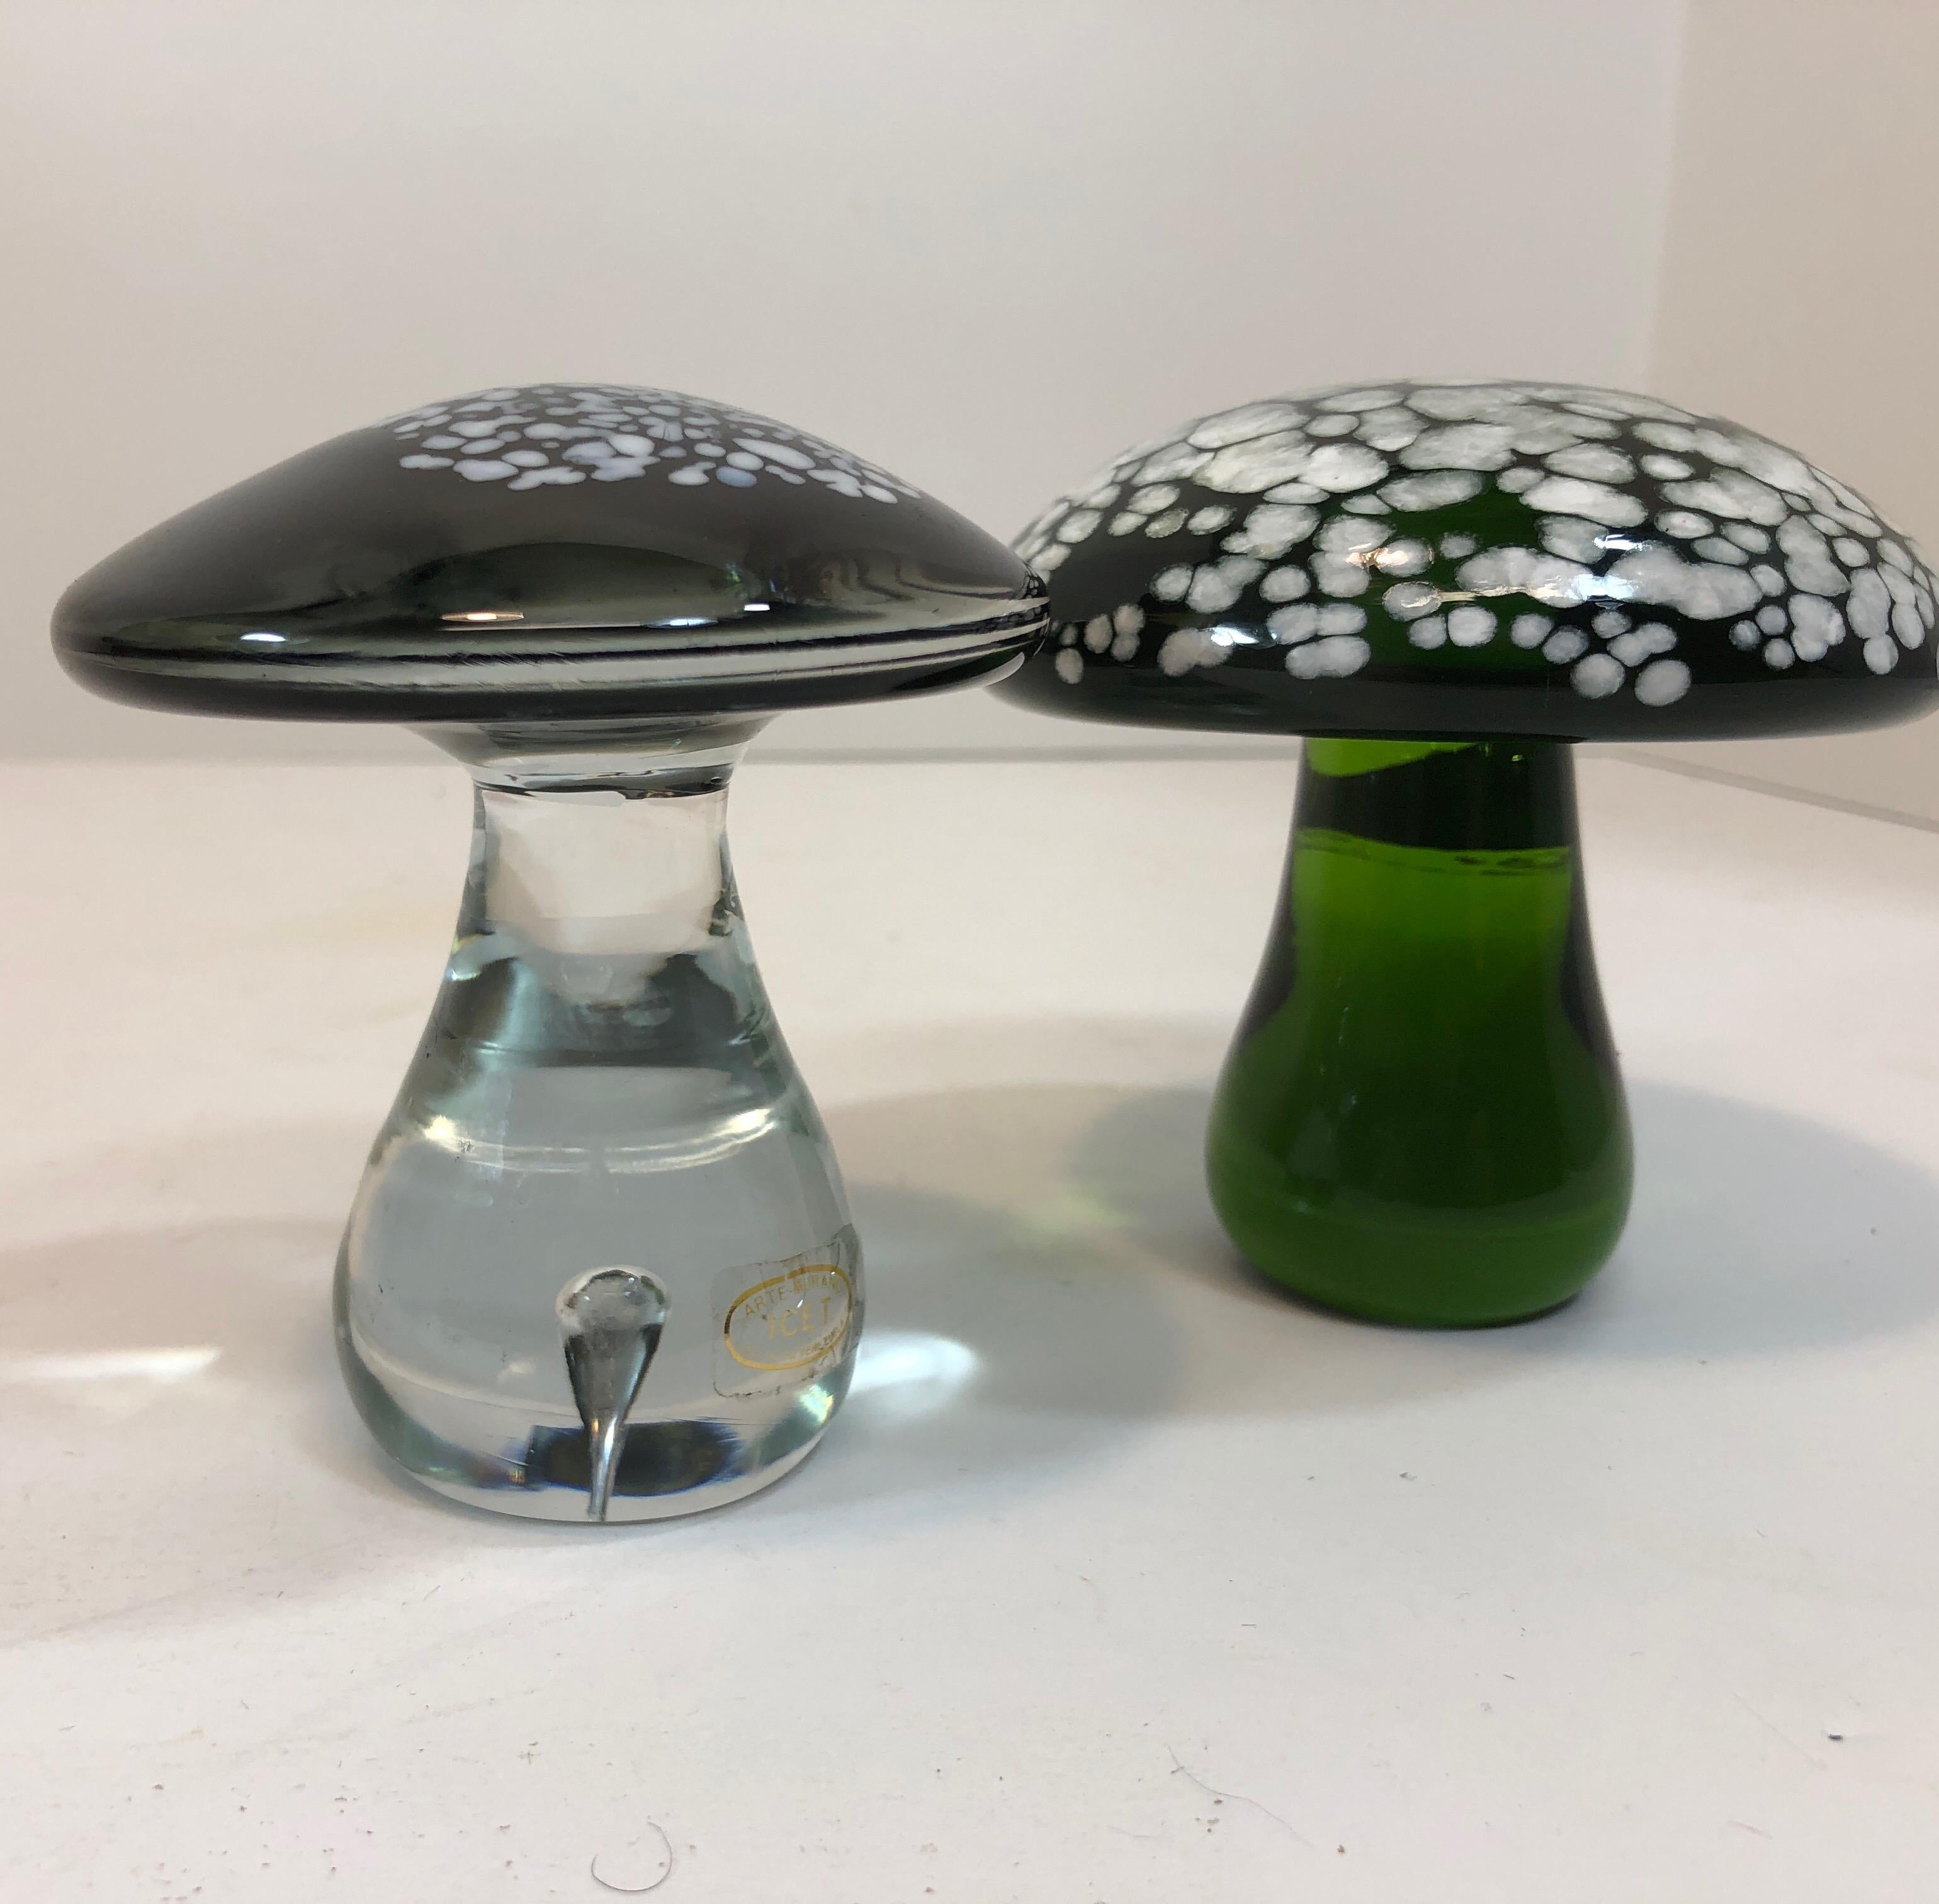 blown glass mushrooms